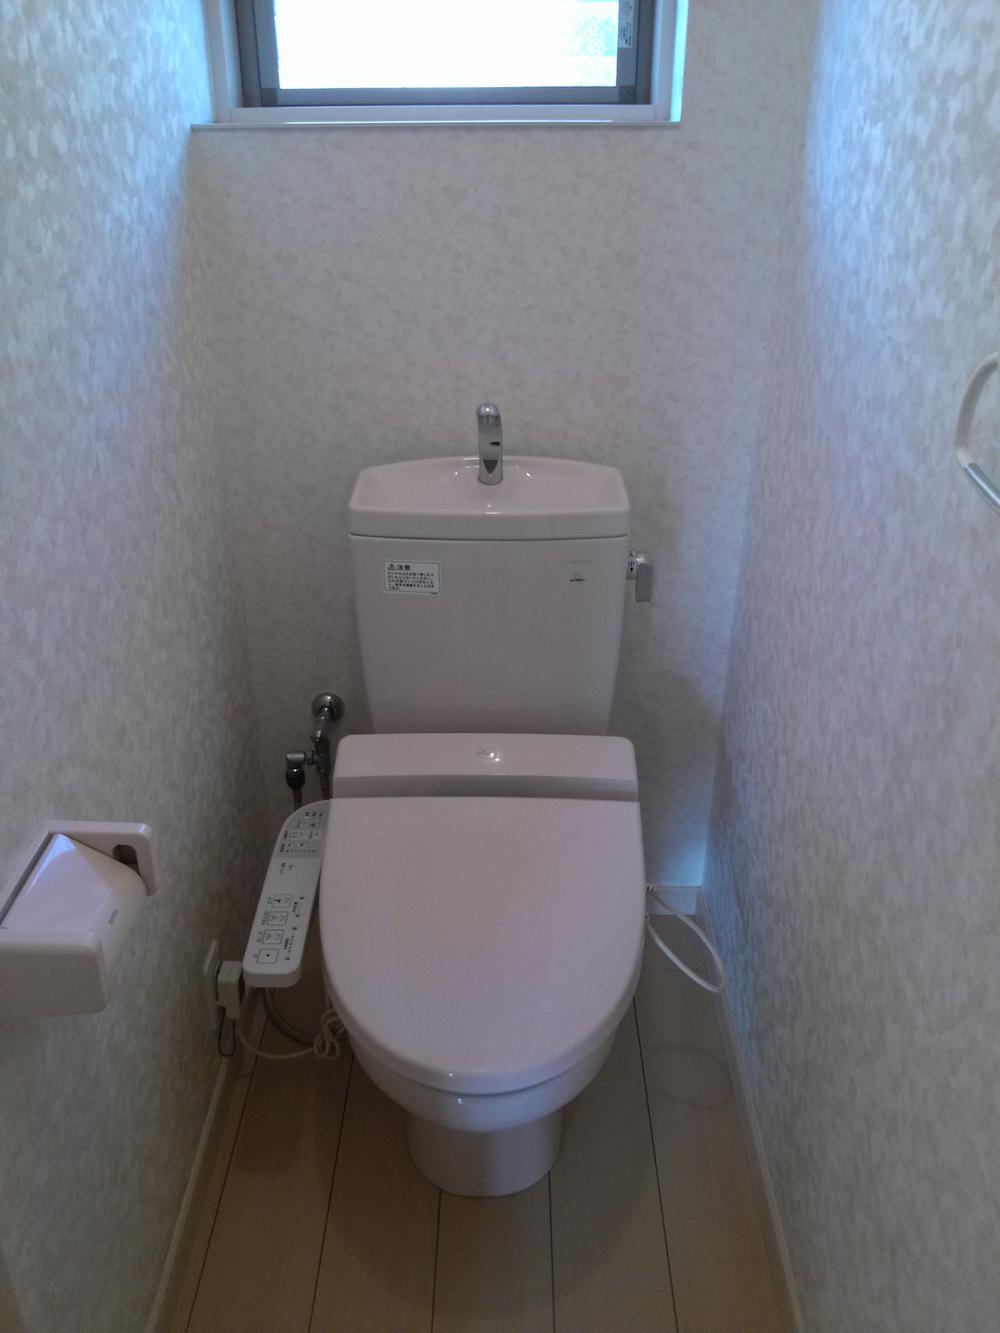 Toilet. Indoor (11 May 2013) shooting, "the second floor toilet"